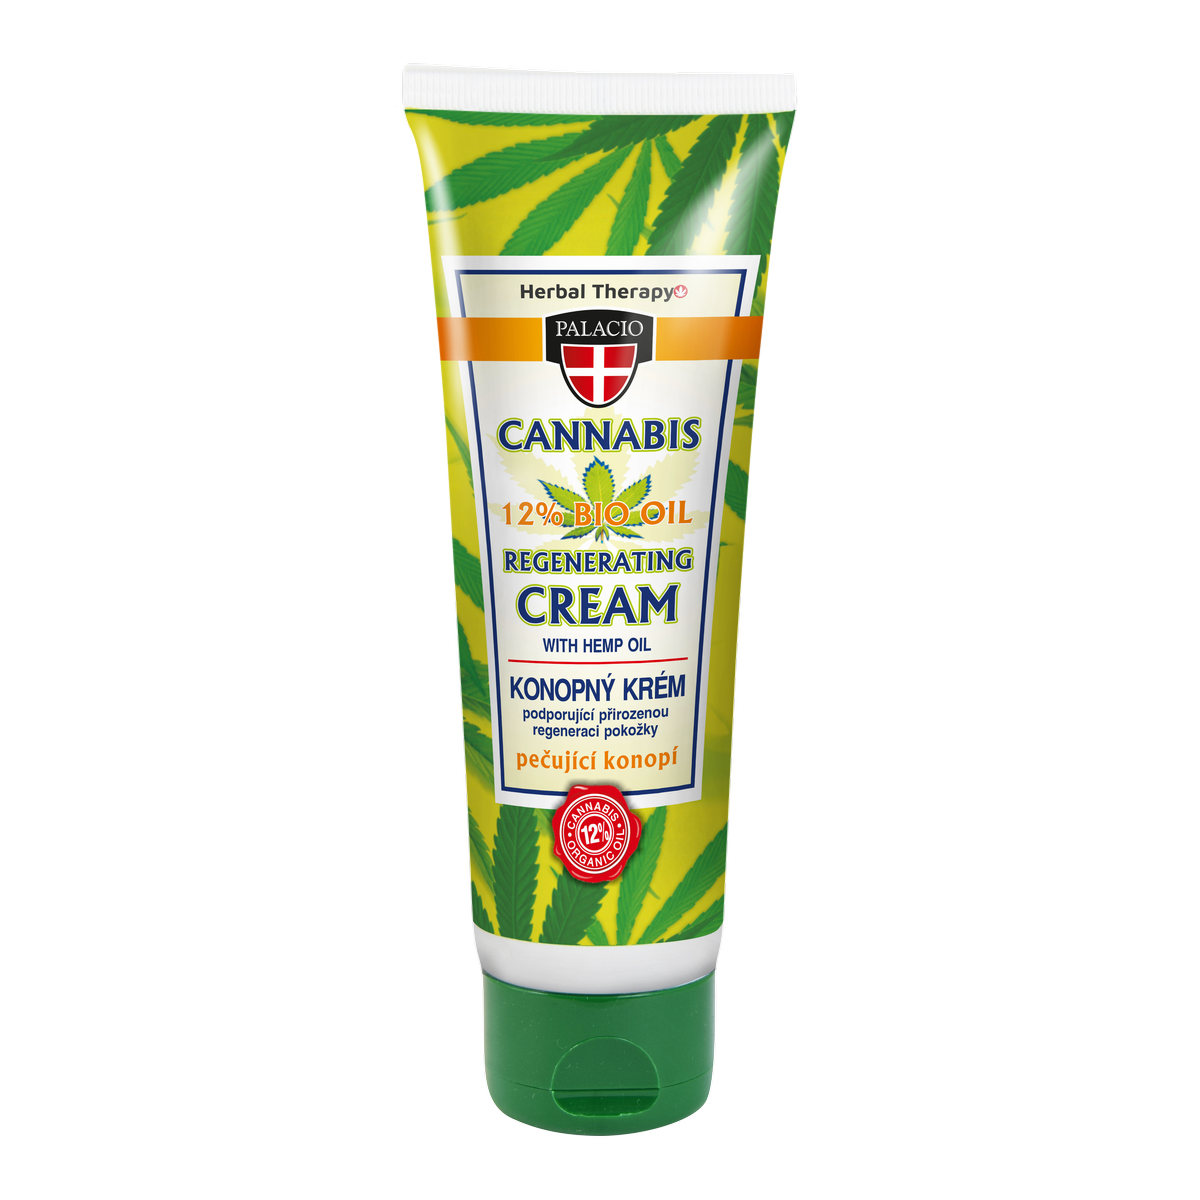 CANNABIS Hand Cream 125ml P0420 ENG WEB 100